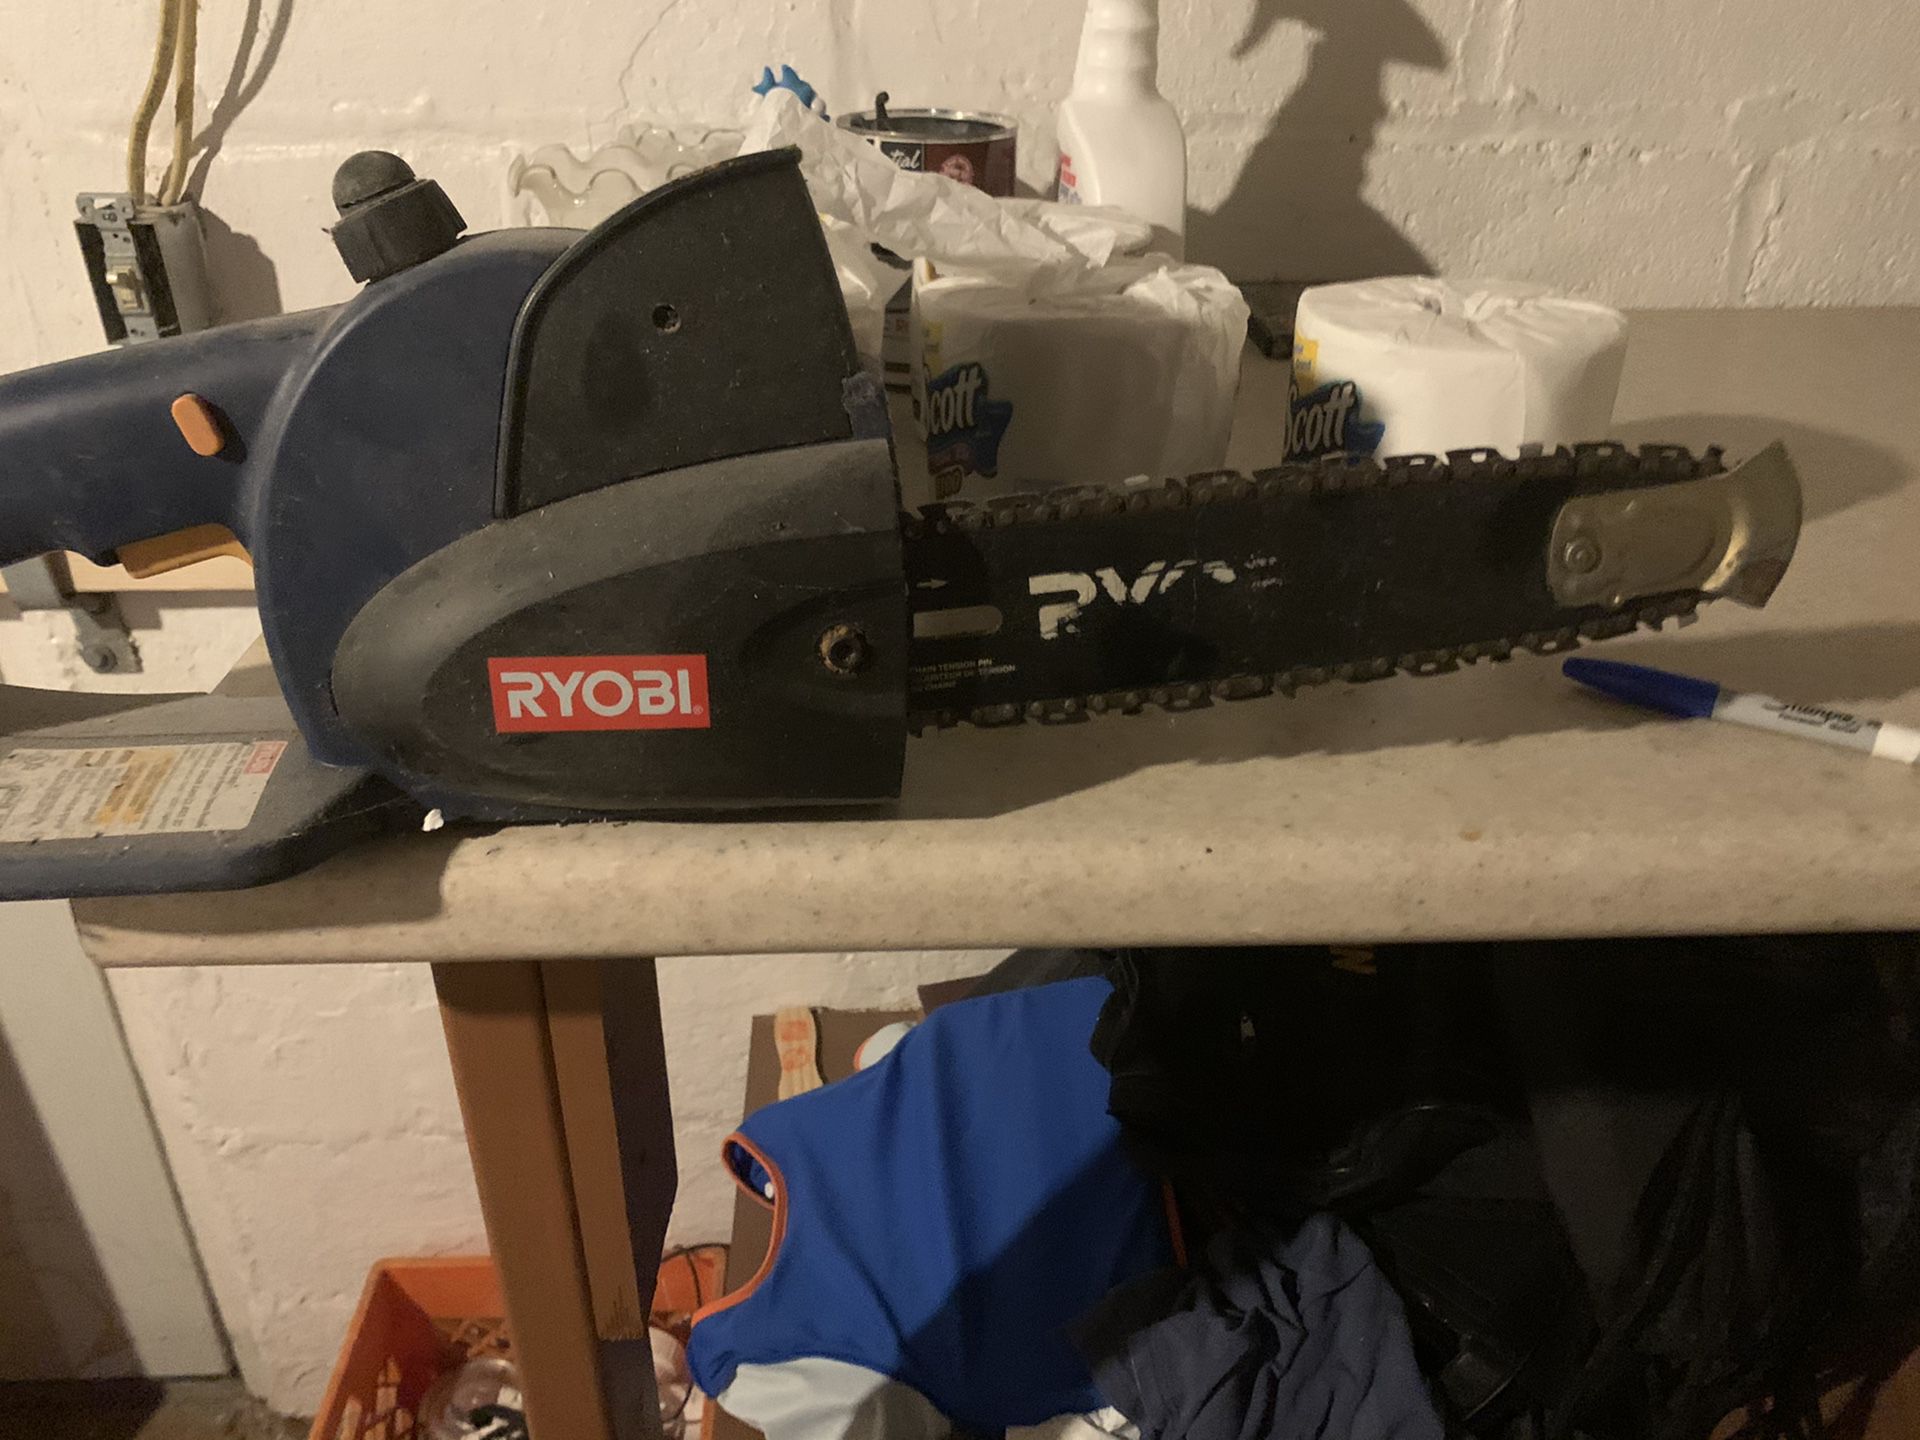 Ryobi chain saw